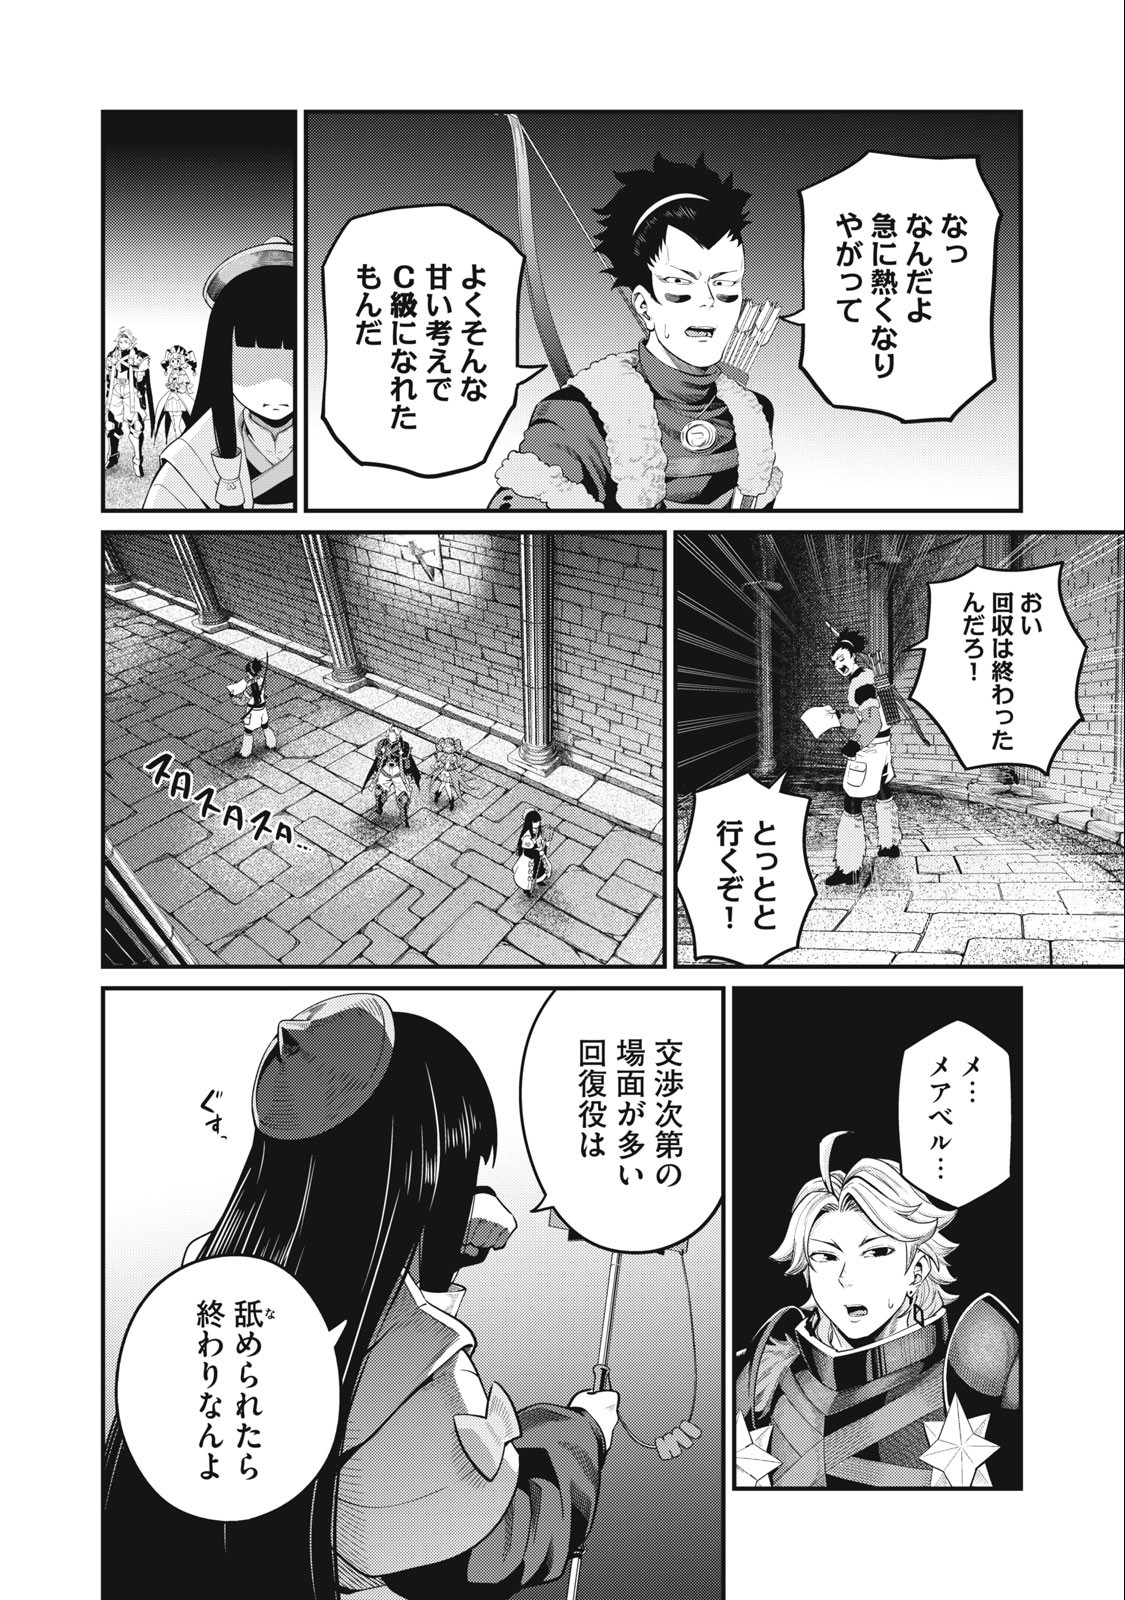 追放された転生重騎士はゲーム知識で無双する 第52話 - Page 6